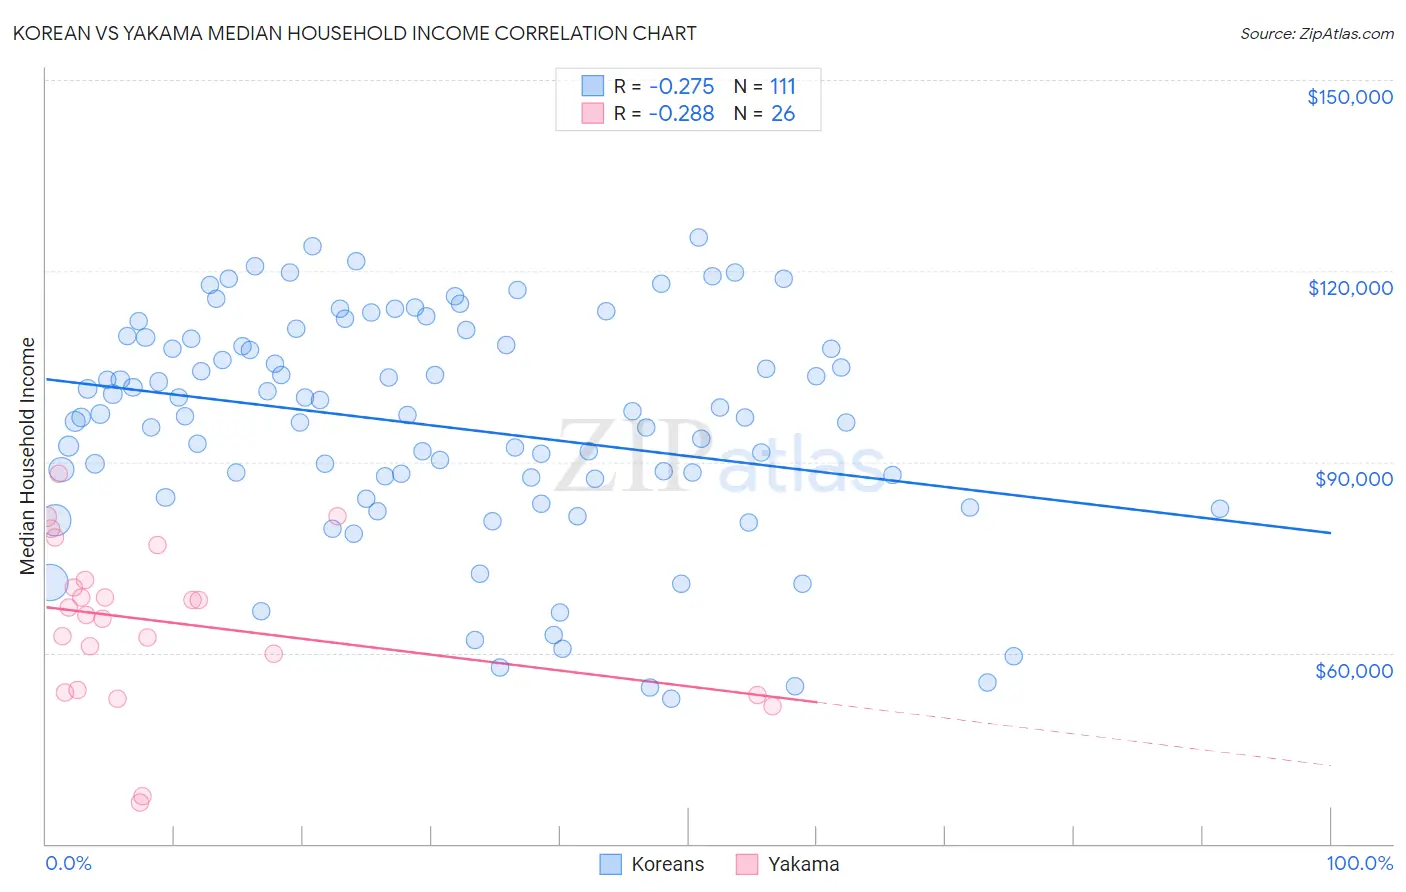 Korean vs Yakama Median Household Income